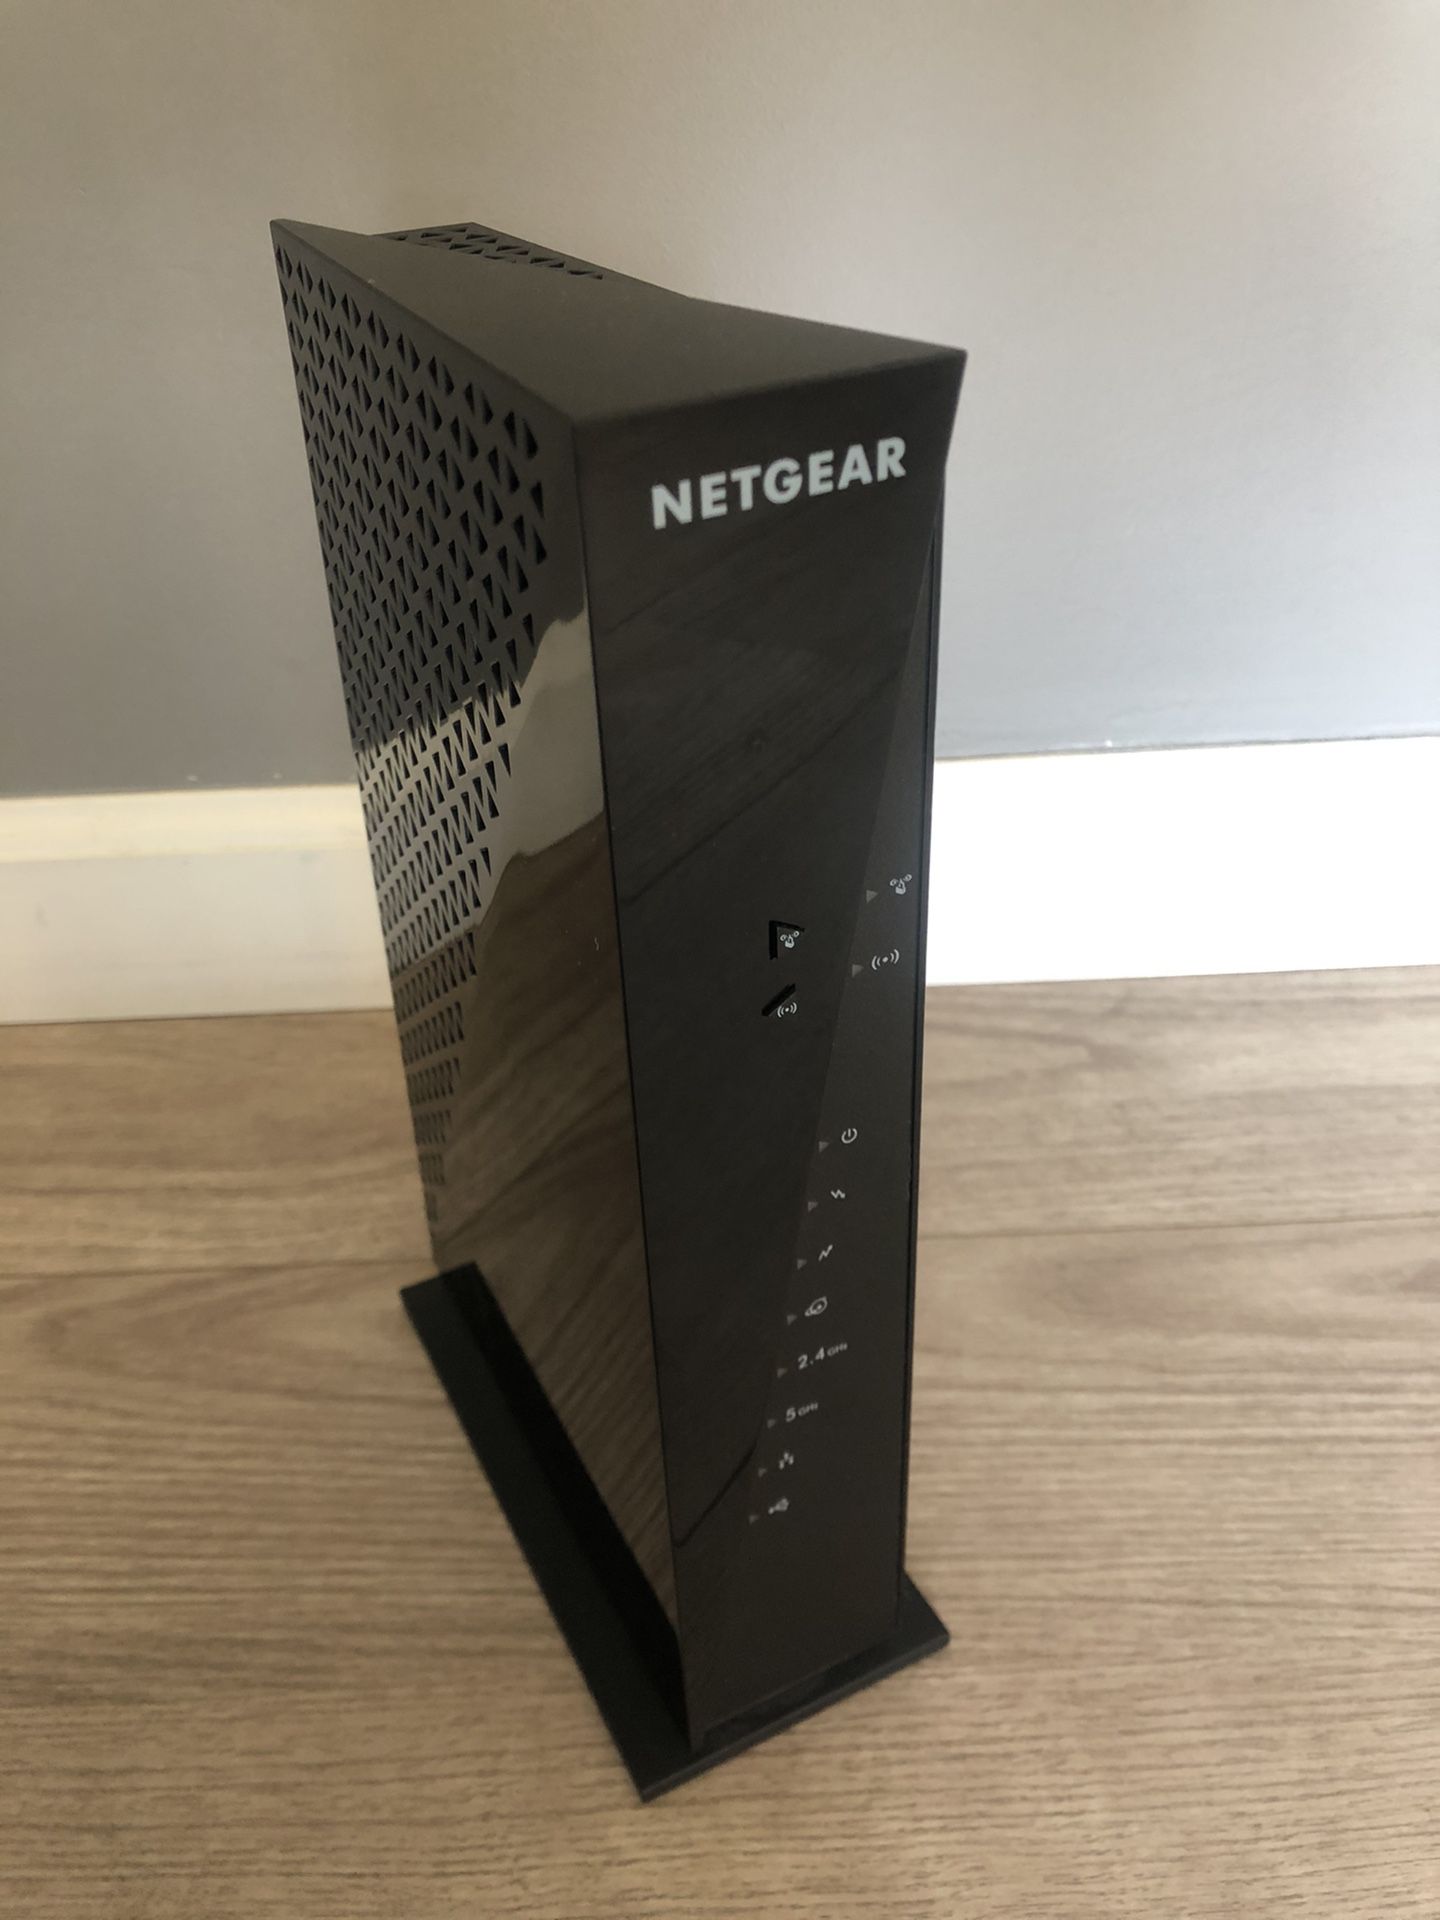 Netgear router/modem combo